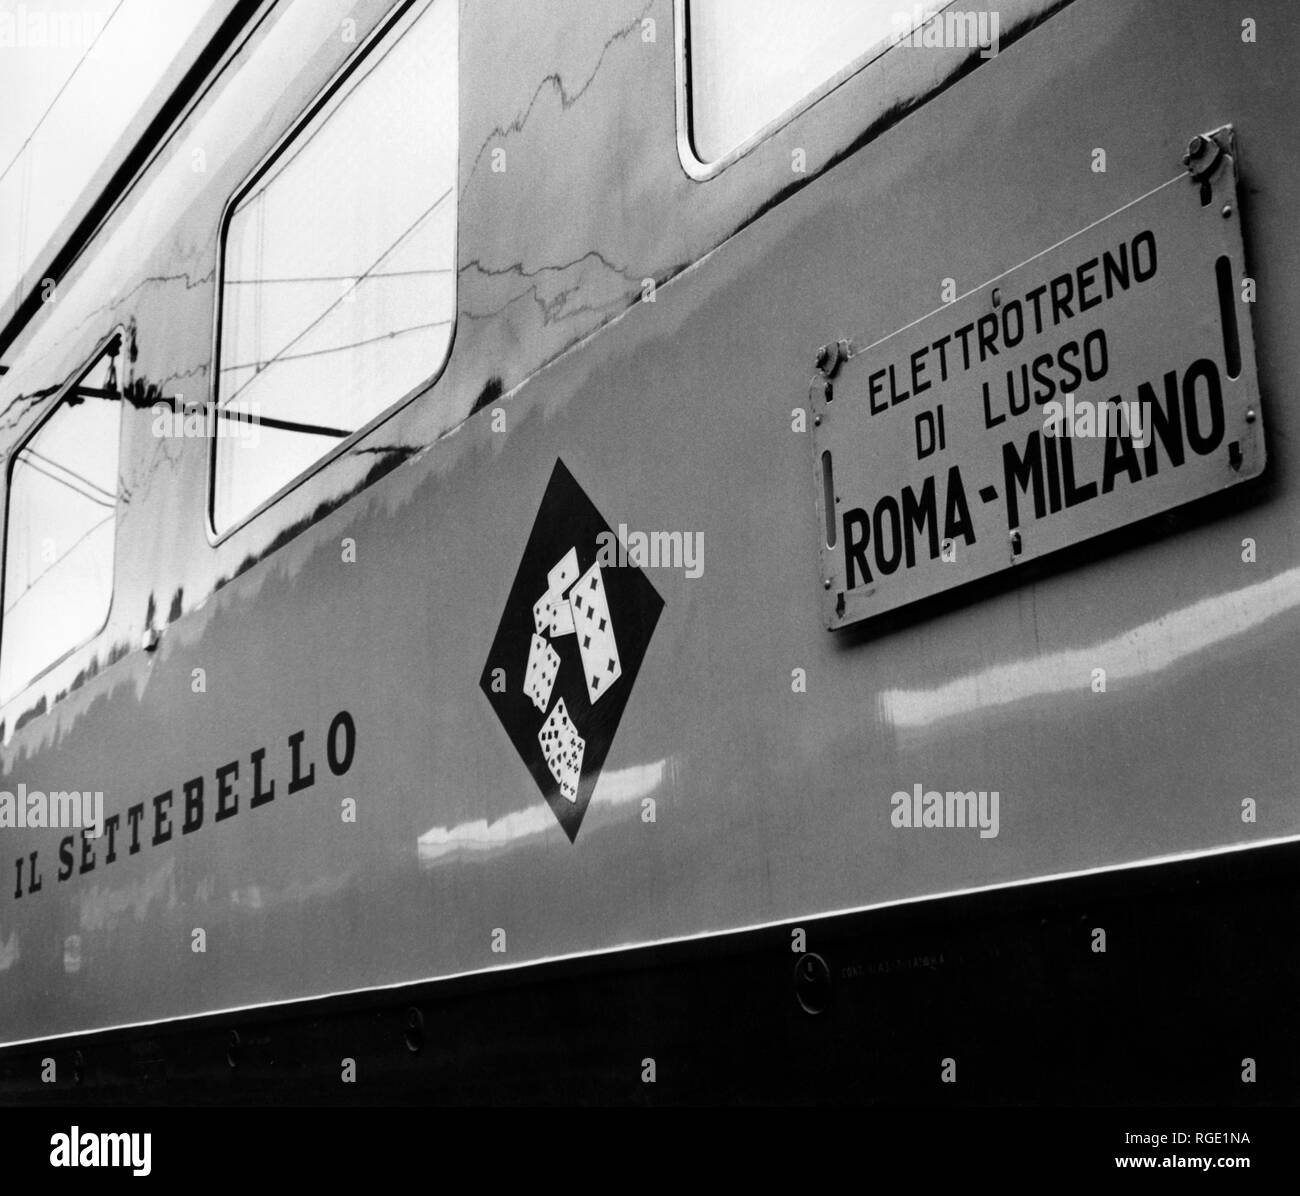 Elettrotreno di lusso roma-milano, elettrico-powered treni passeggeri, ETR 300, treno settebello, Italia 1960 Foto Stock